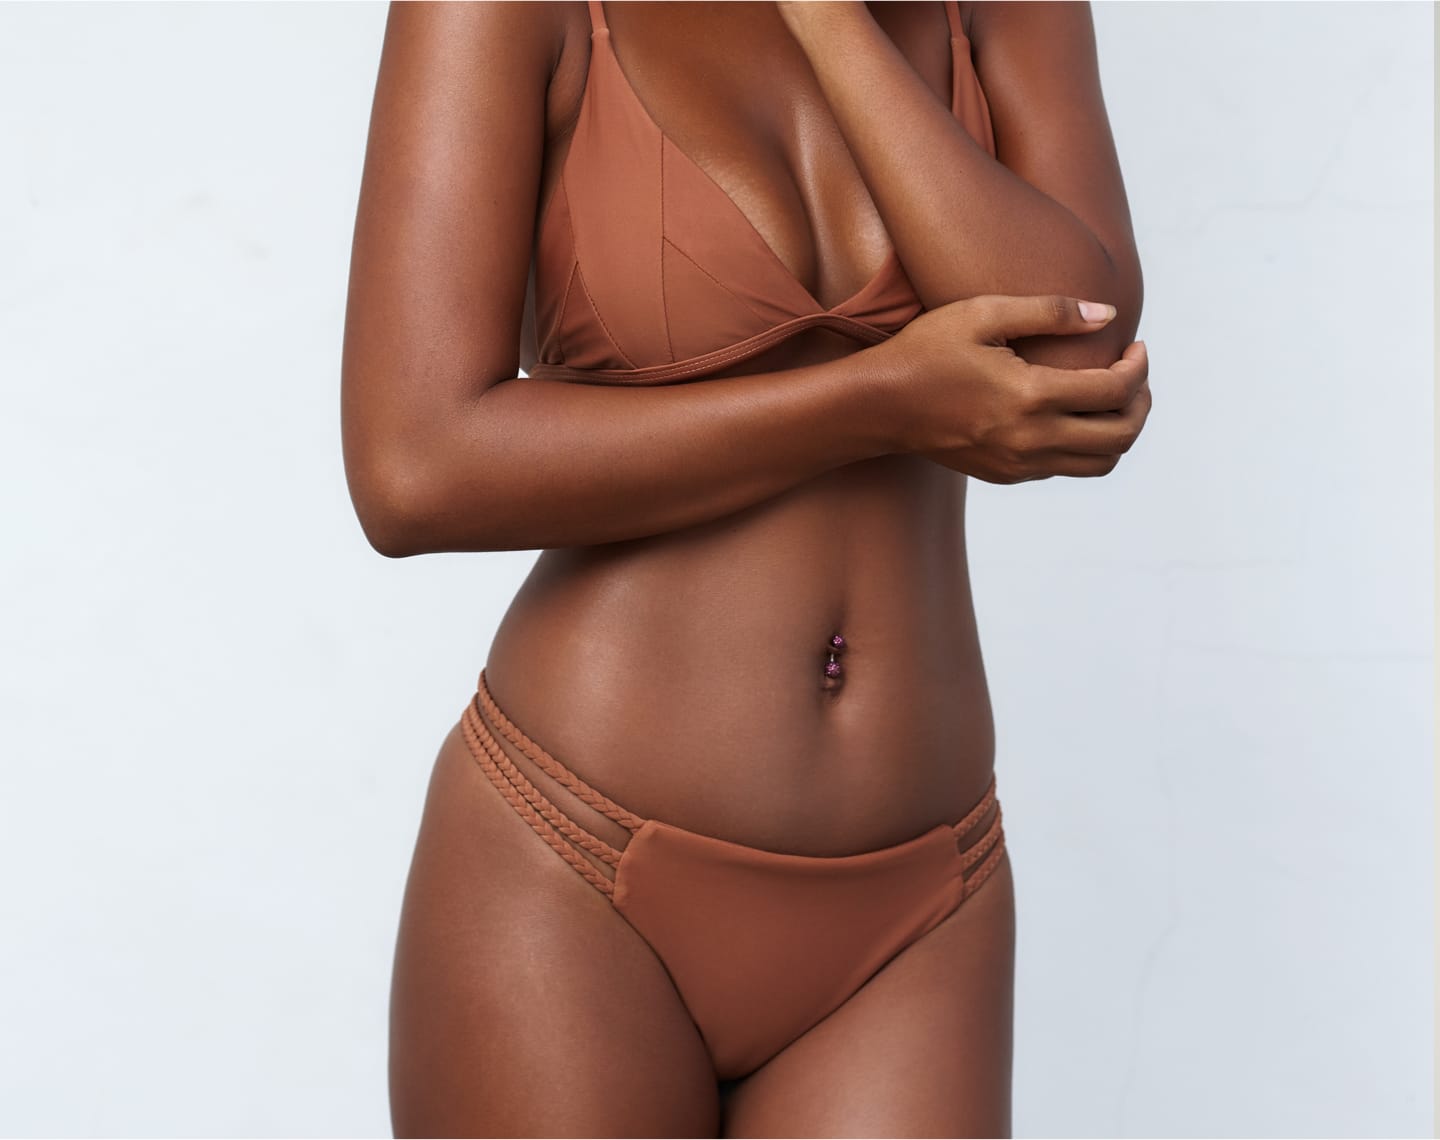 Close up of woman's body in bikini